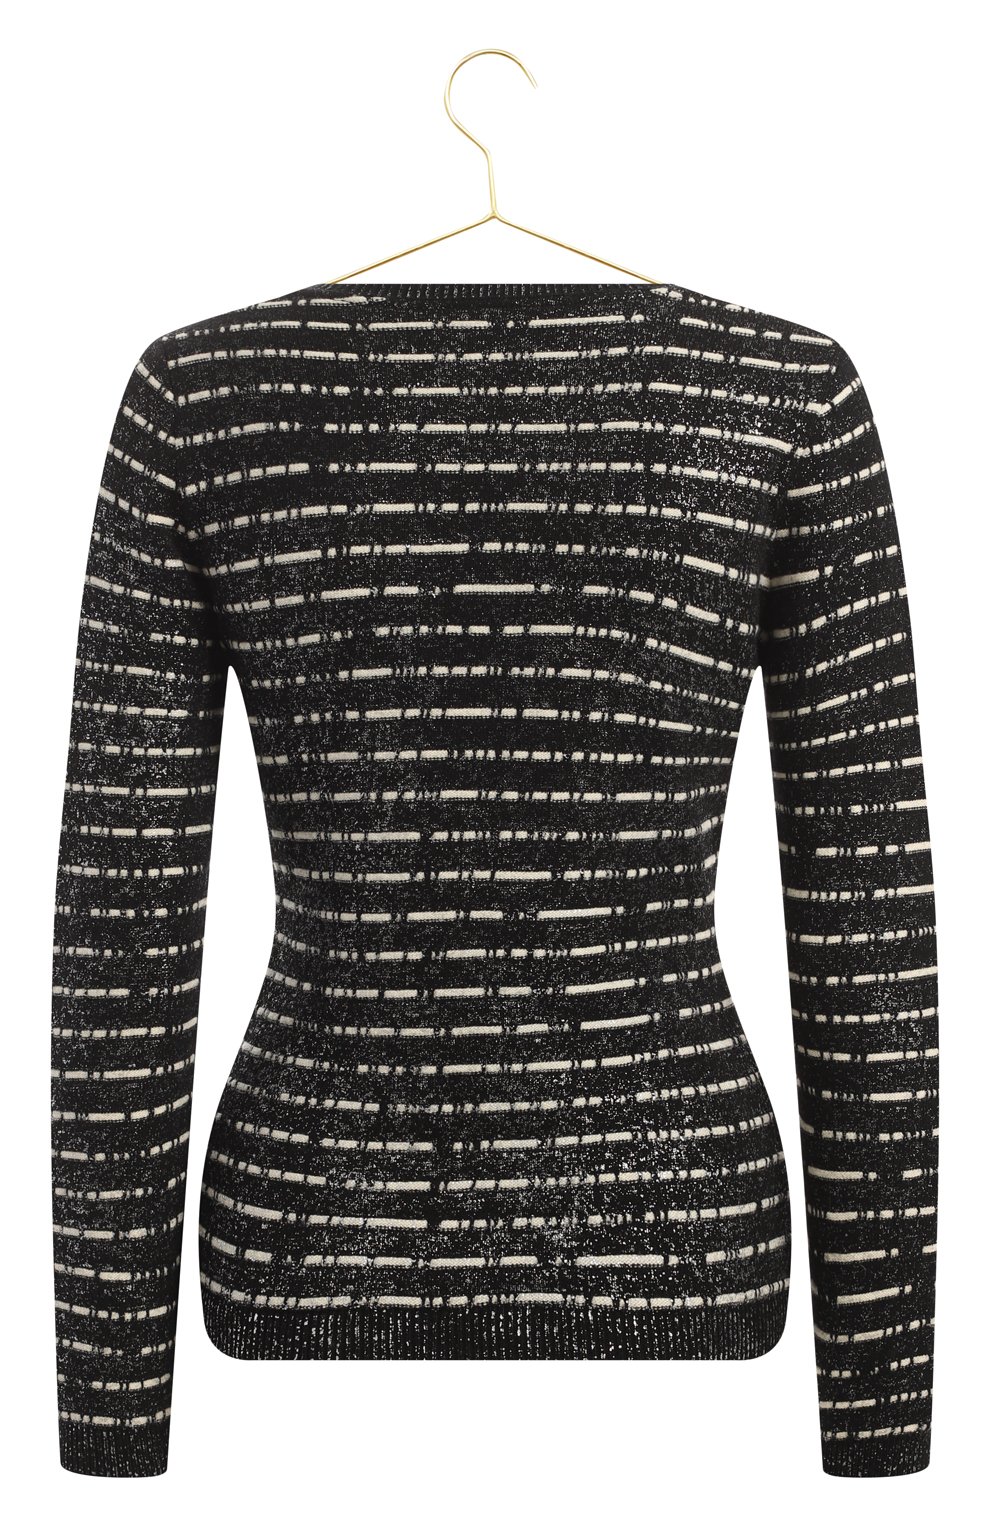 Пуловер из шерсти и кашемира | Chanel | Чёрно-белый - 2